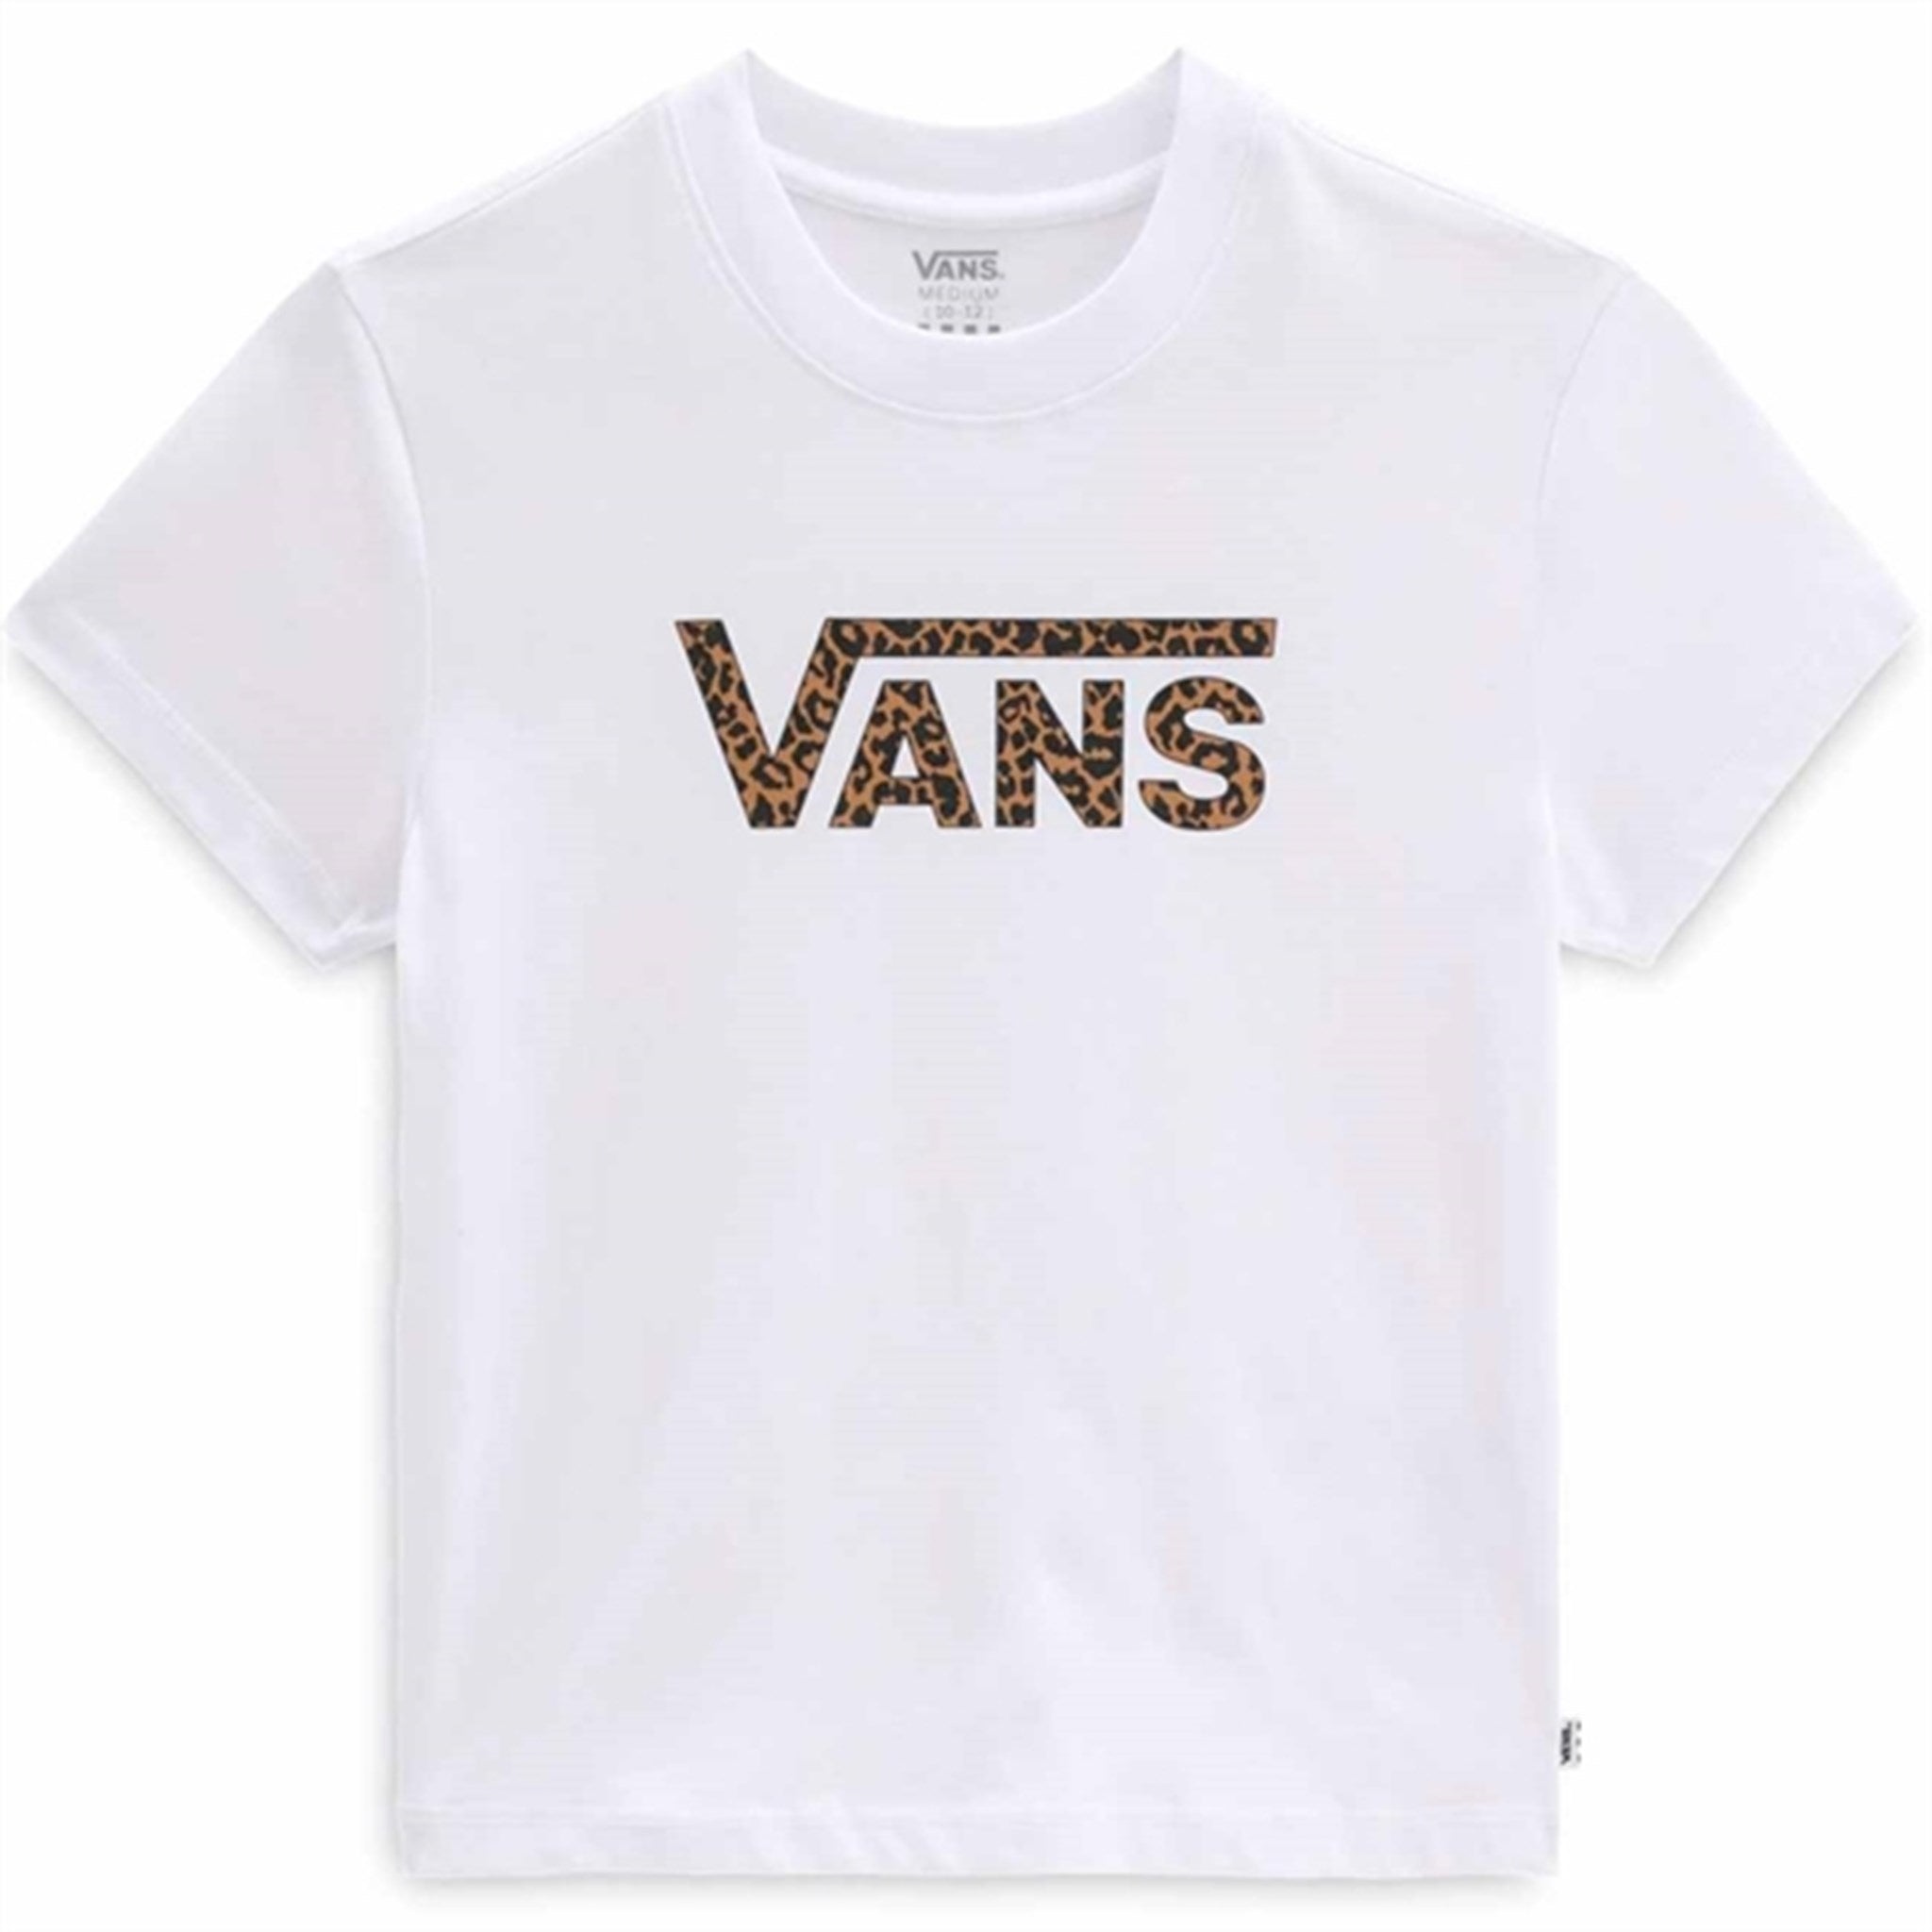 VANS Flying V Crew Girls T-shirt White/Leopard